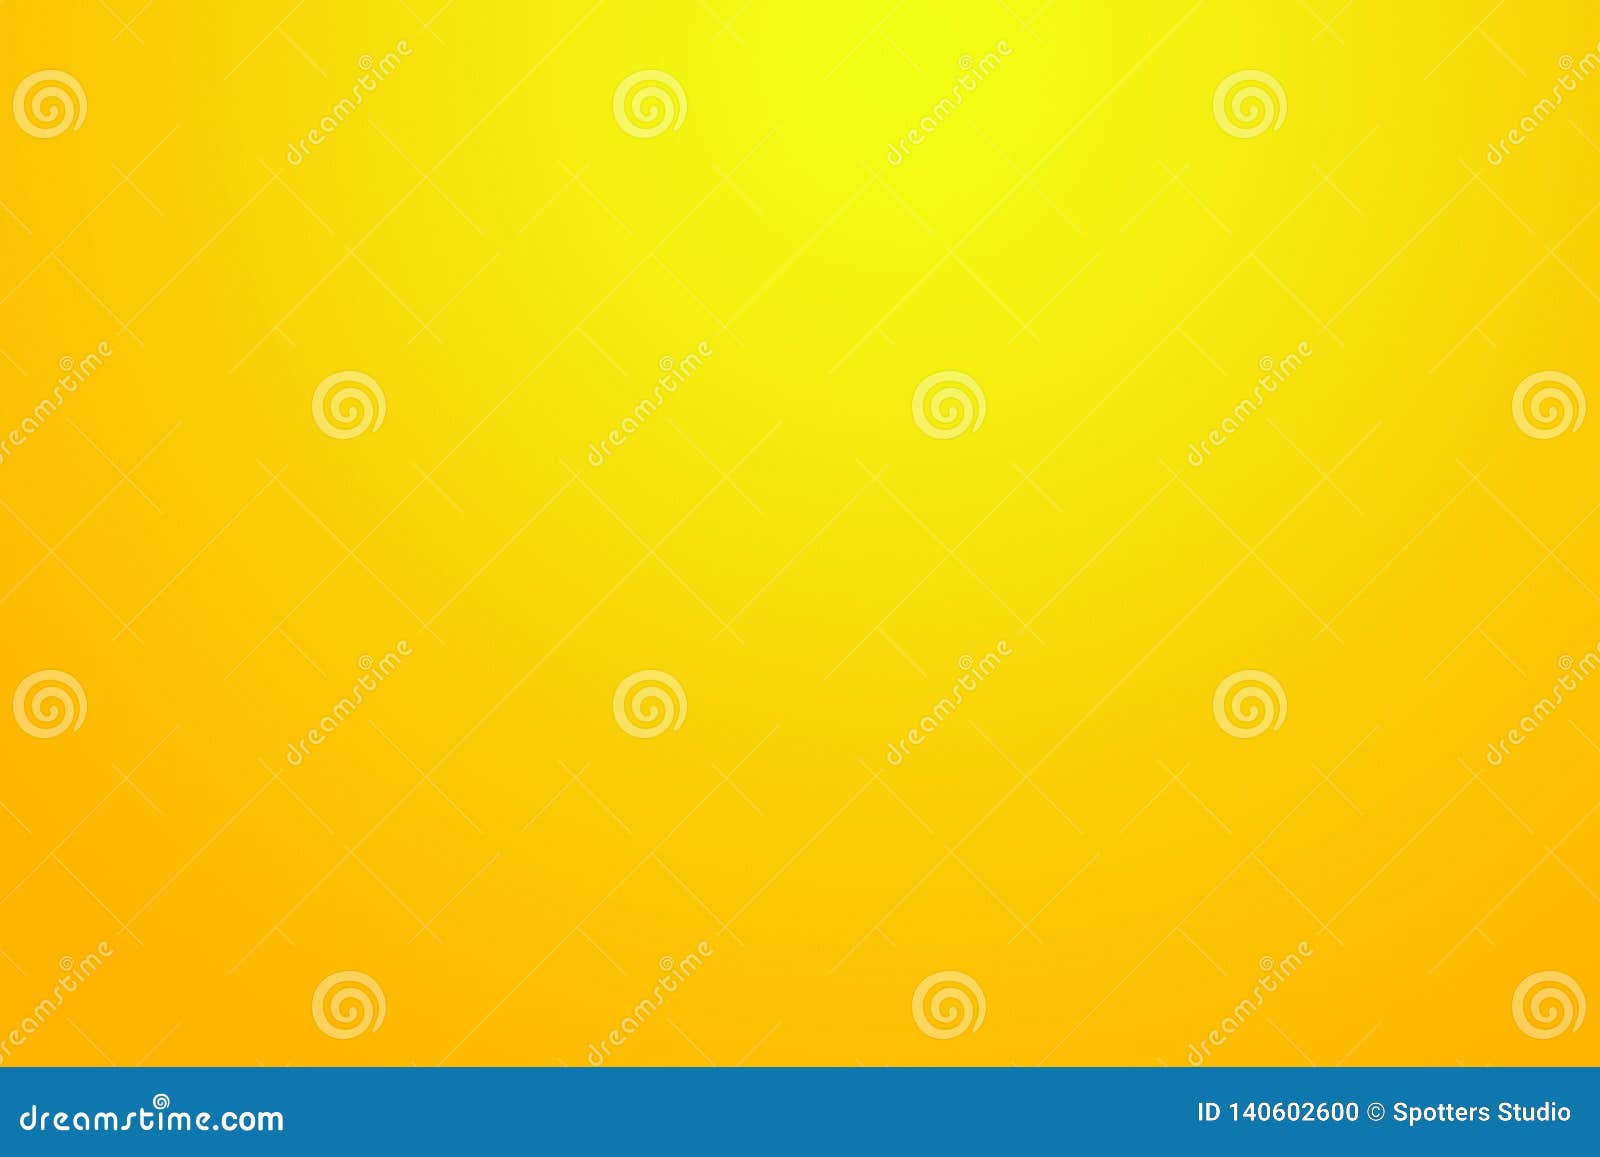 Unduh 940 Koleksi Background Gradasi Kuning Orange HD Gratis